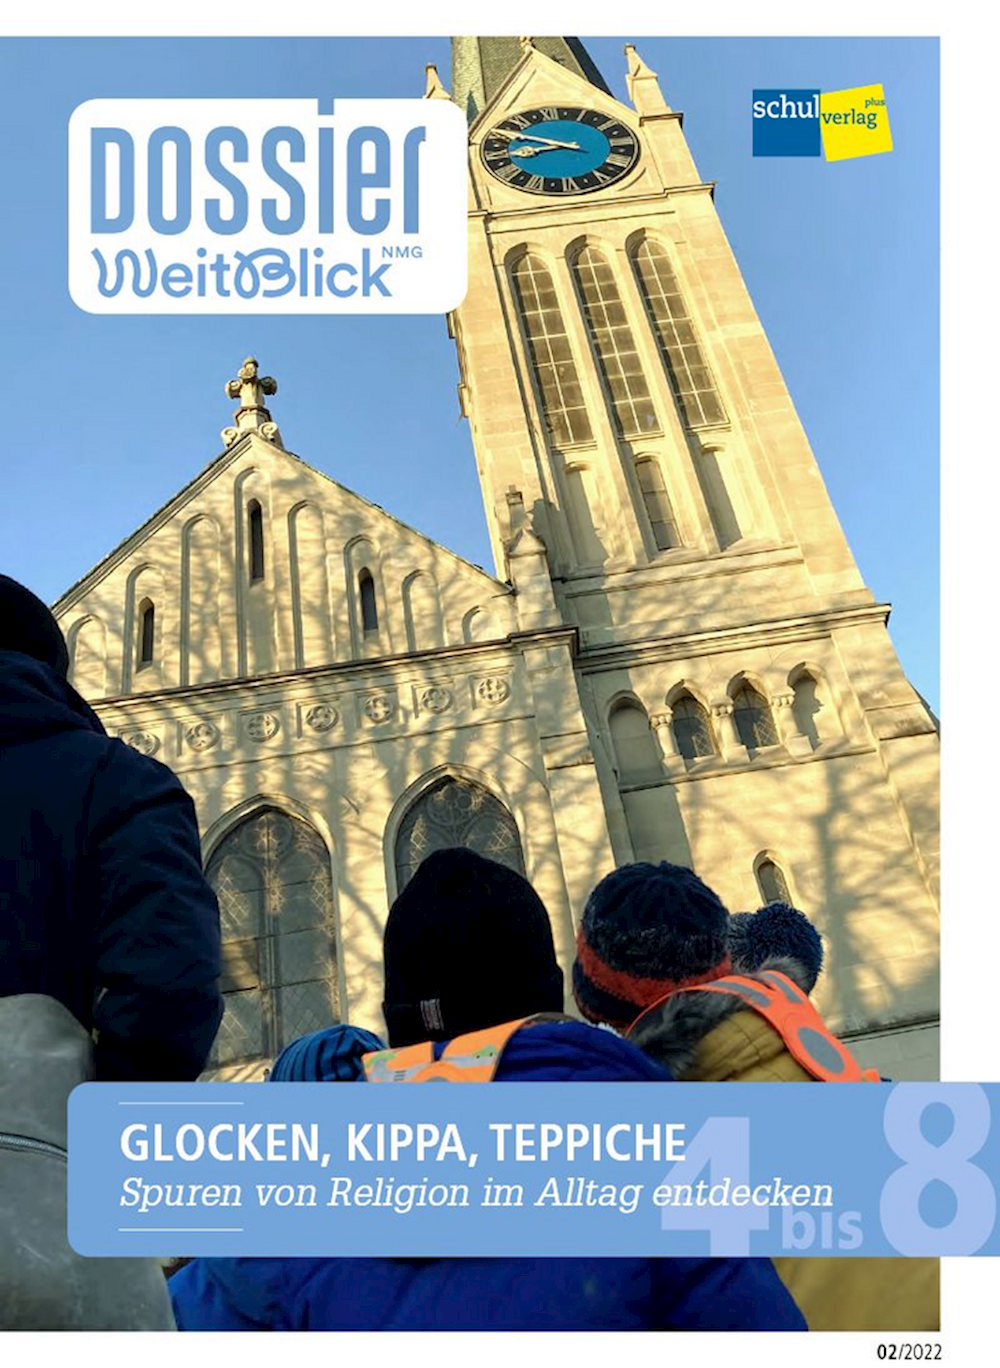 Dossier Weitblick NMG GLOCKEN, KIPPA, TEPPICHE Spu